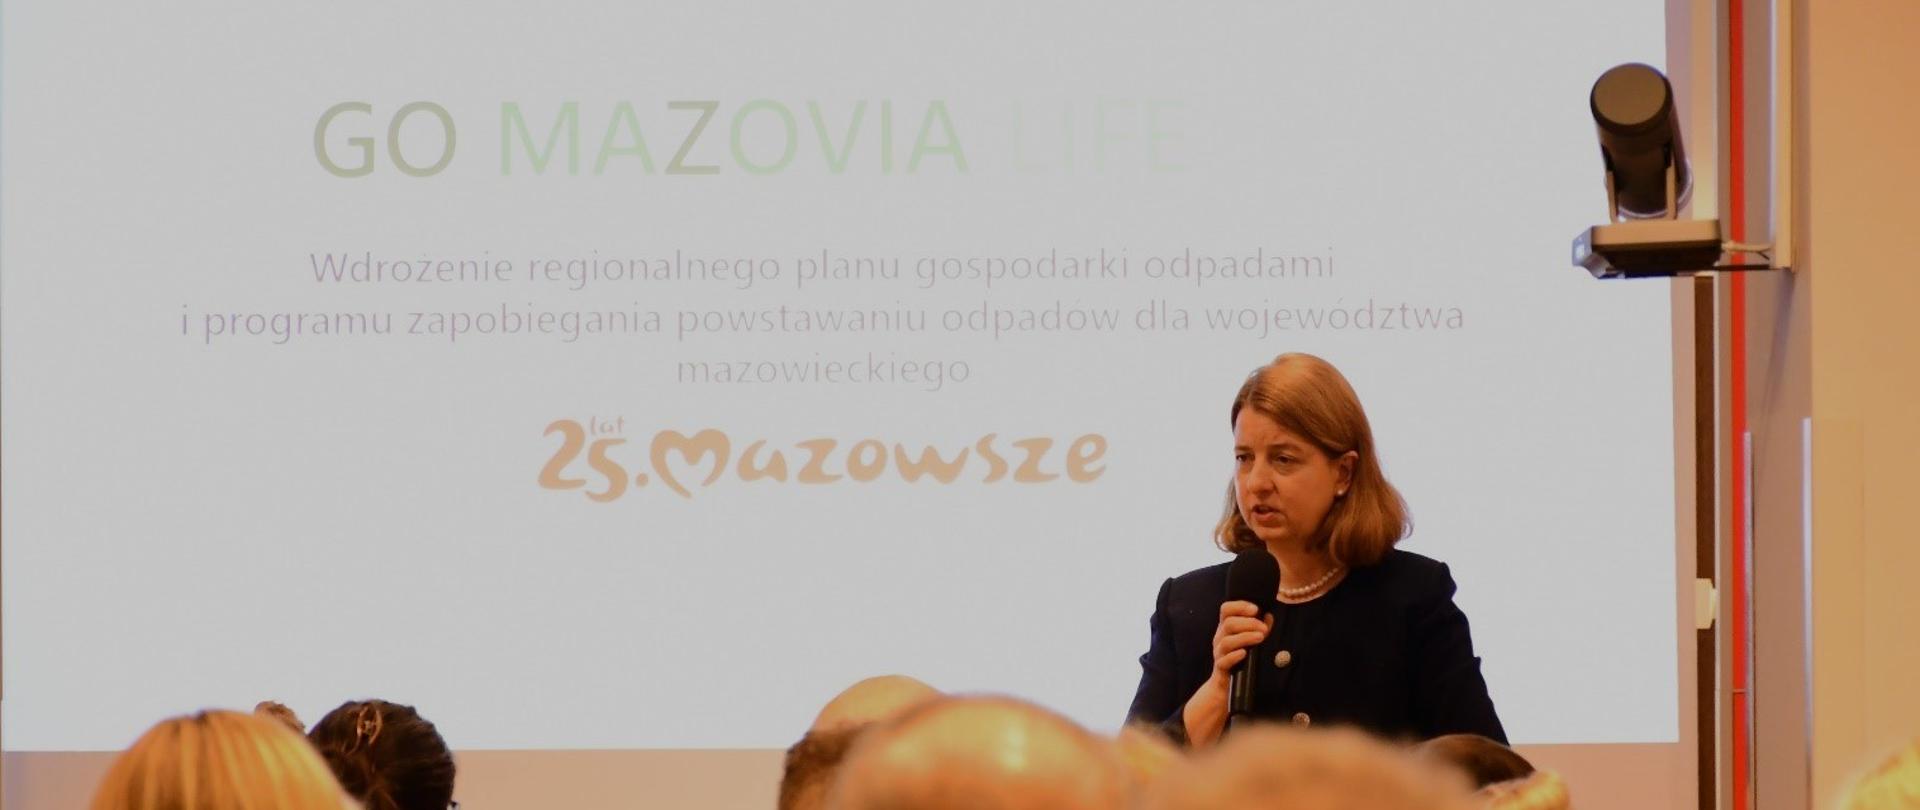 Anna Żochowska, uczestnicząca w Konferencji, która odbyła się w siedzibie Urzędu Marszałkowskiego Województwa Mazowieckiego (UMWM) w Warszawie.